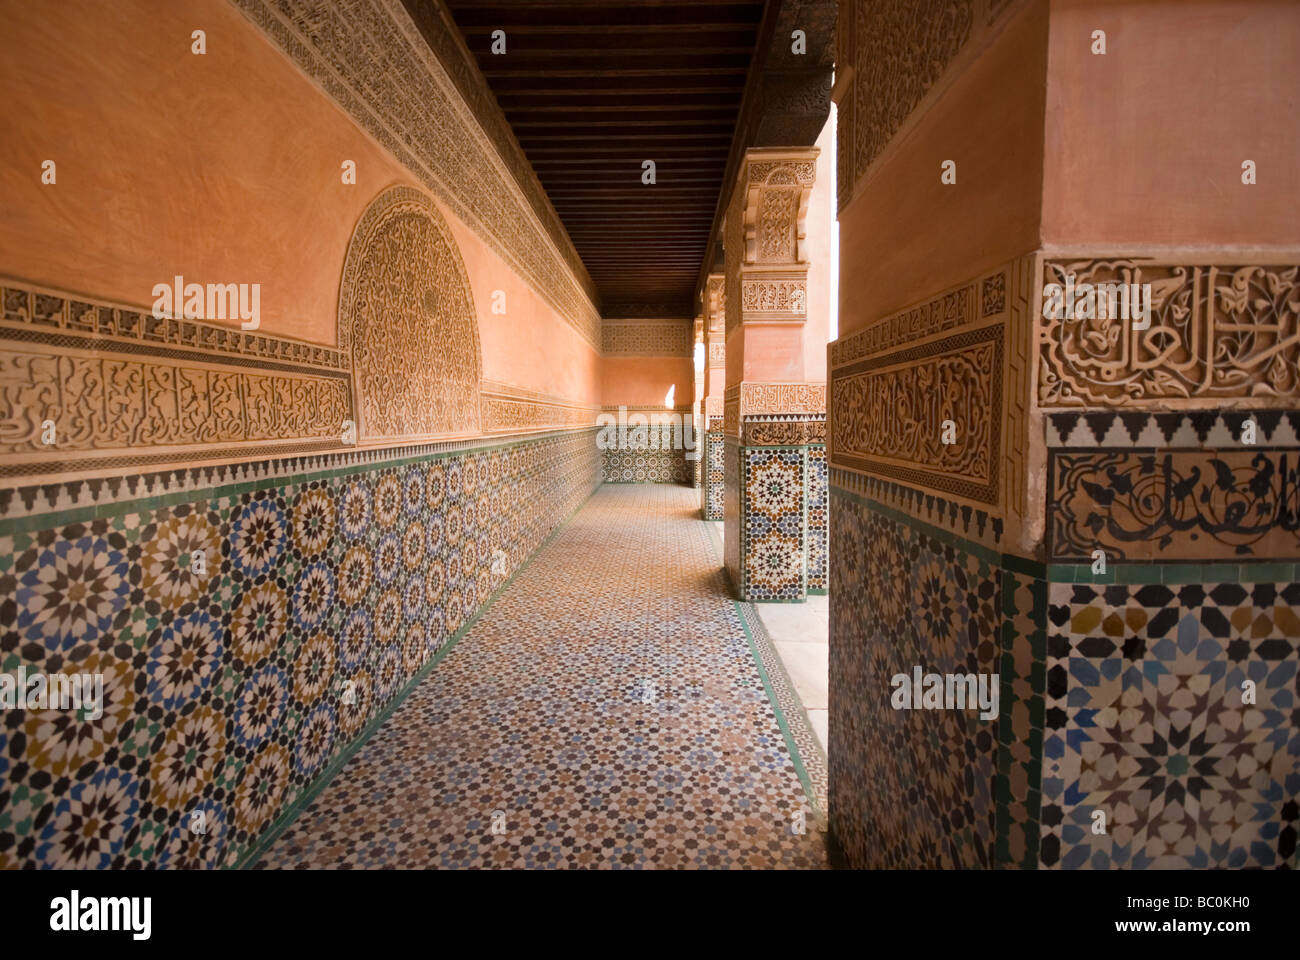 Un modèle mur mosaïque colorée sur les murs de la Medersa Ben Youssef une ancienne école islamique à Marrakech Maroc Banque D'Images